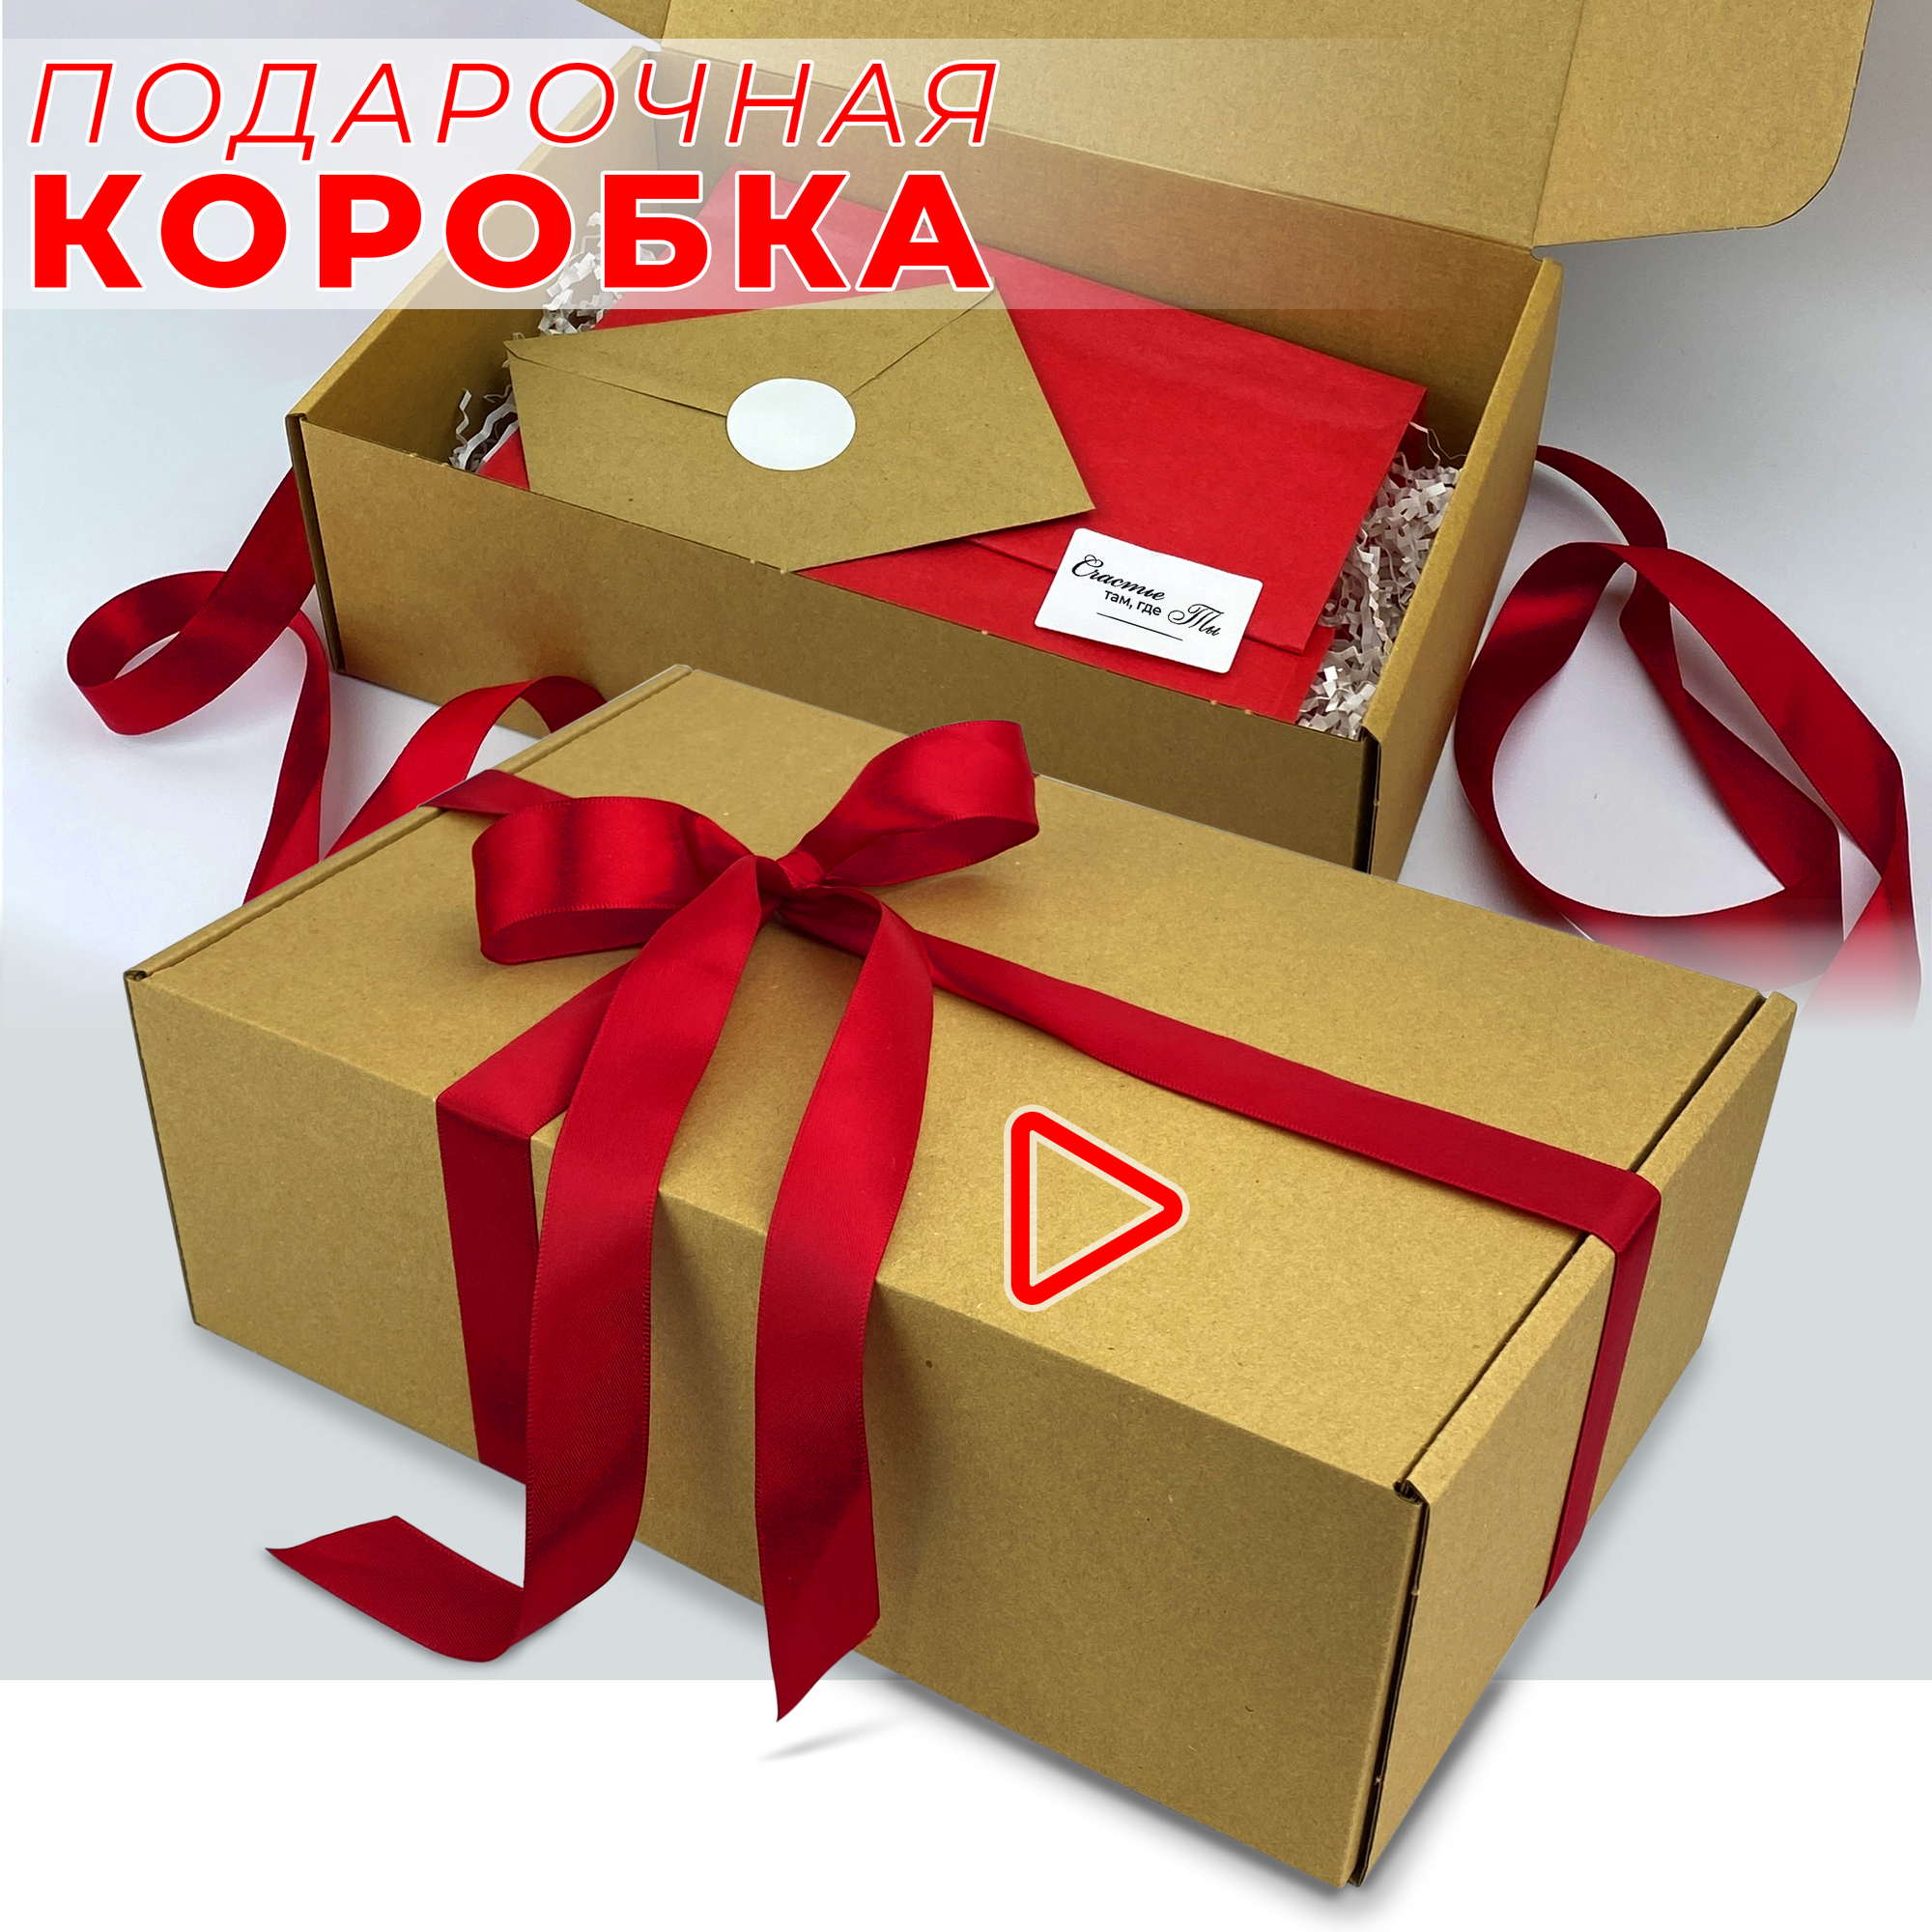 Подарочная коробка 30х20х10см крафт с красной лентой, наполнителем, конвертом и набором наклеек